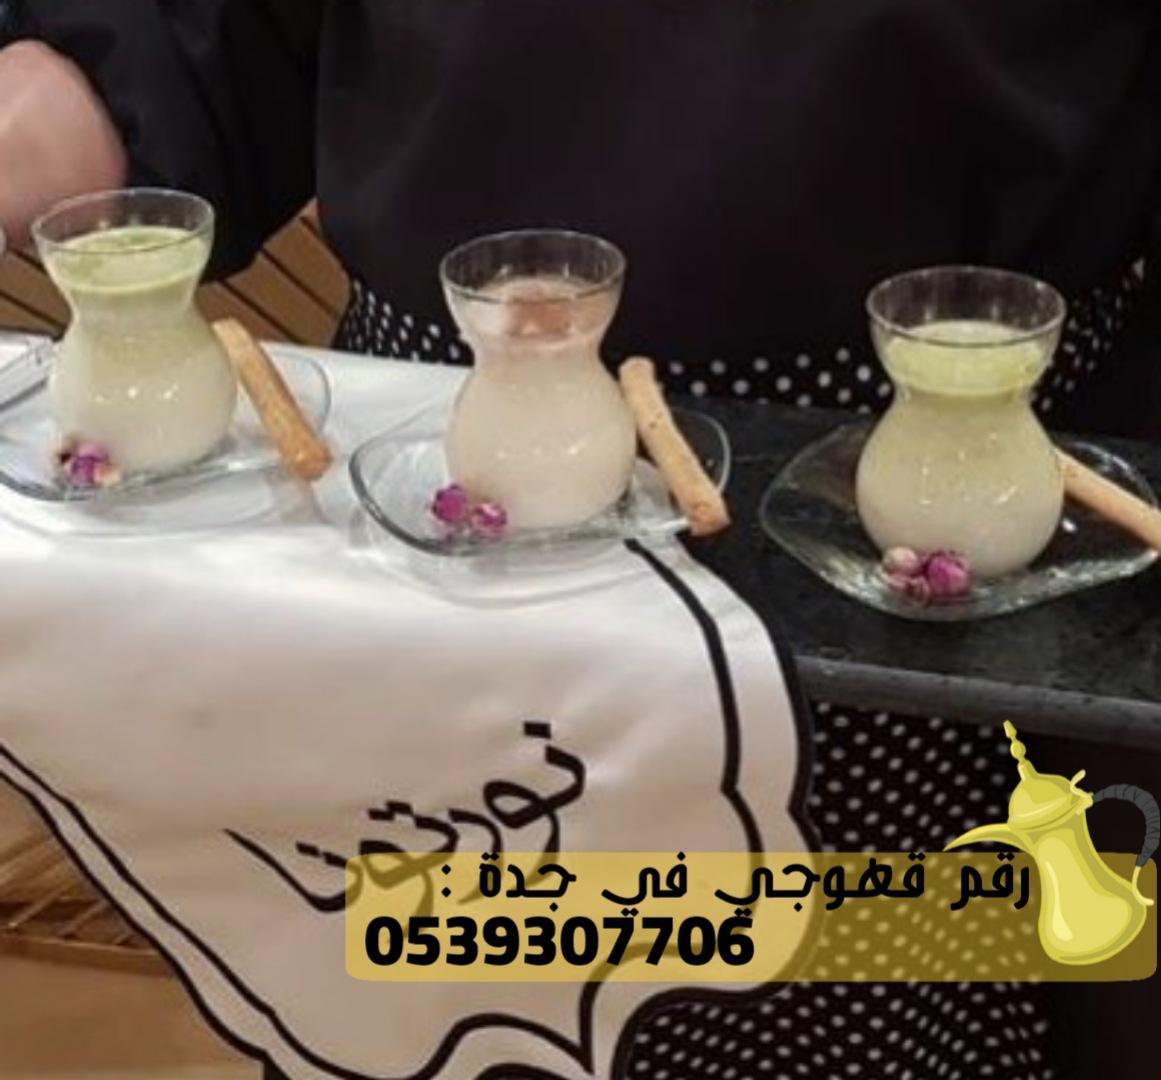 قهوجي في جدة و صبابين قهوة, 0539307706 908145639